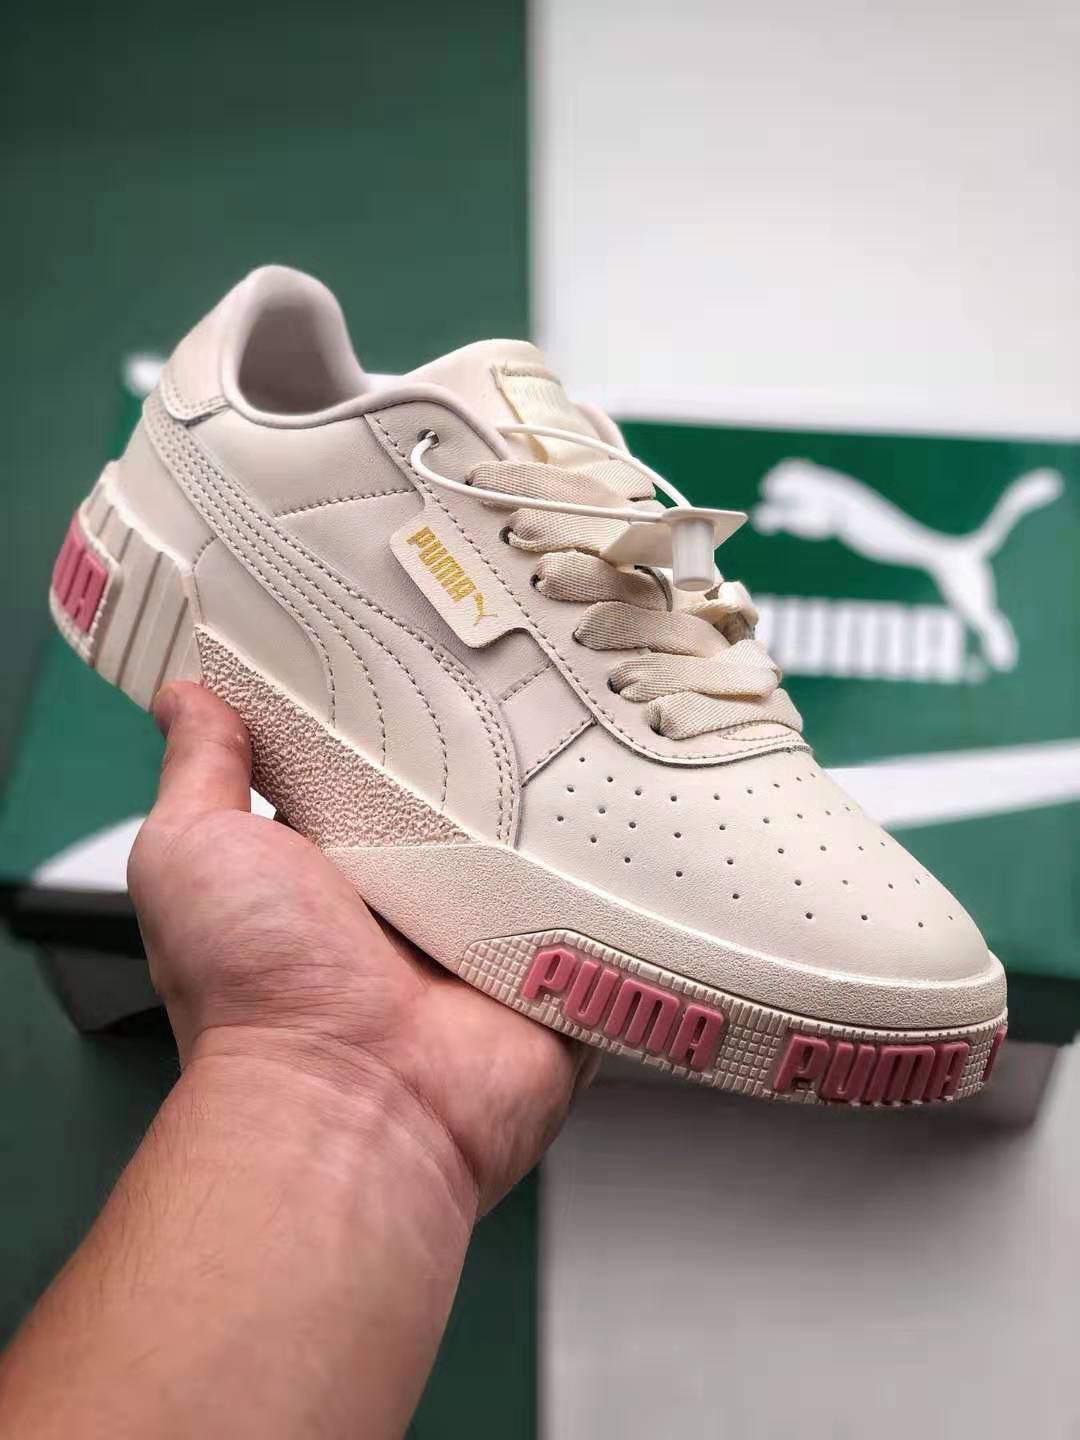 PUMA Cali Bold Pink White 370811-02 | Stylish Women's Sneakers